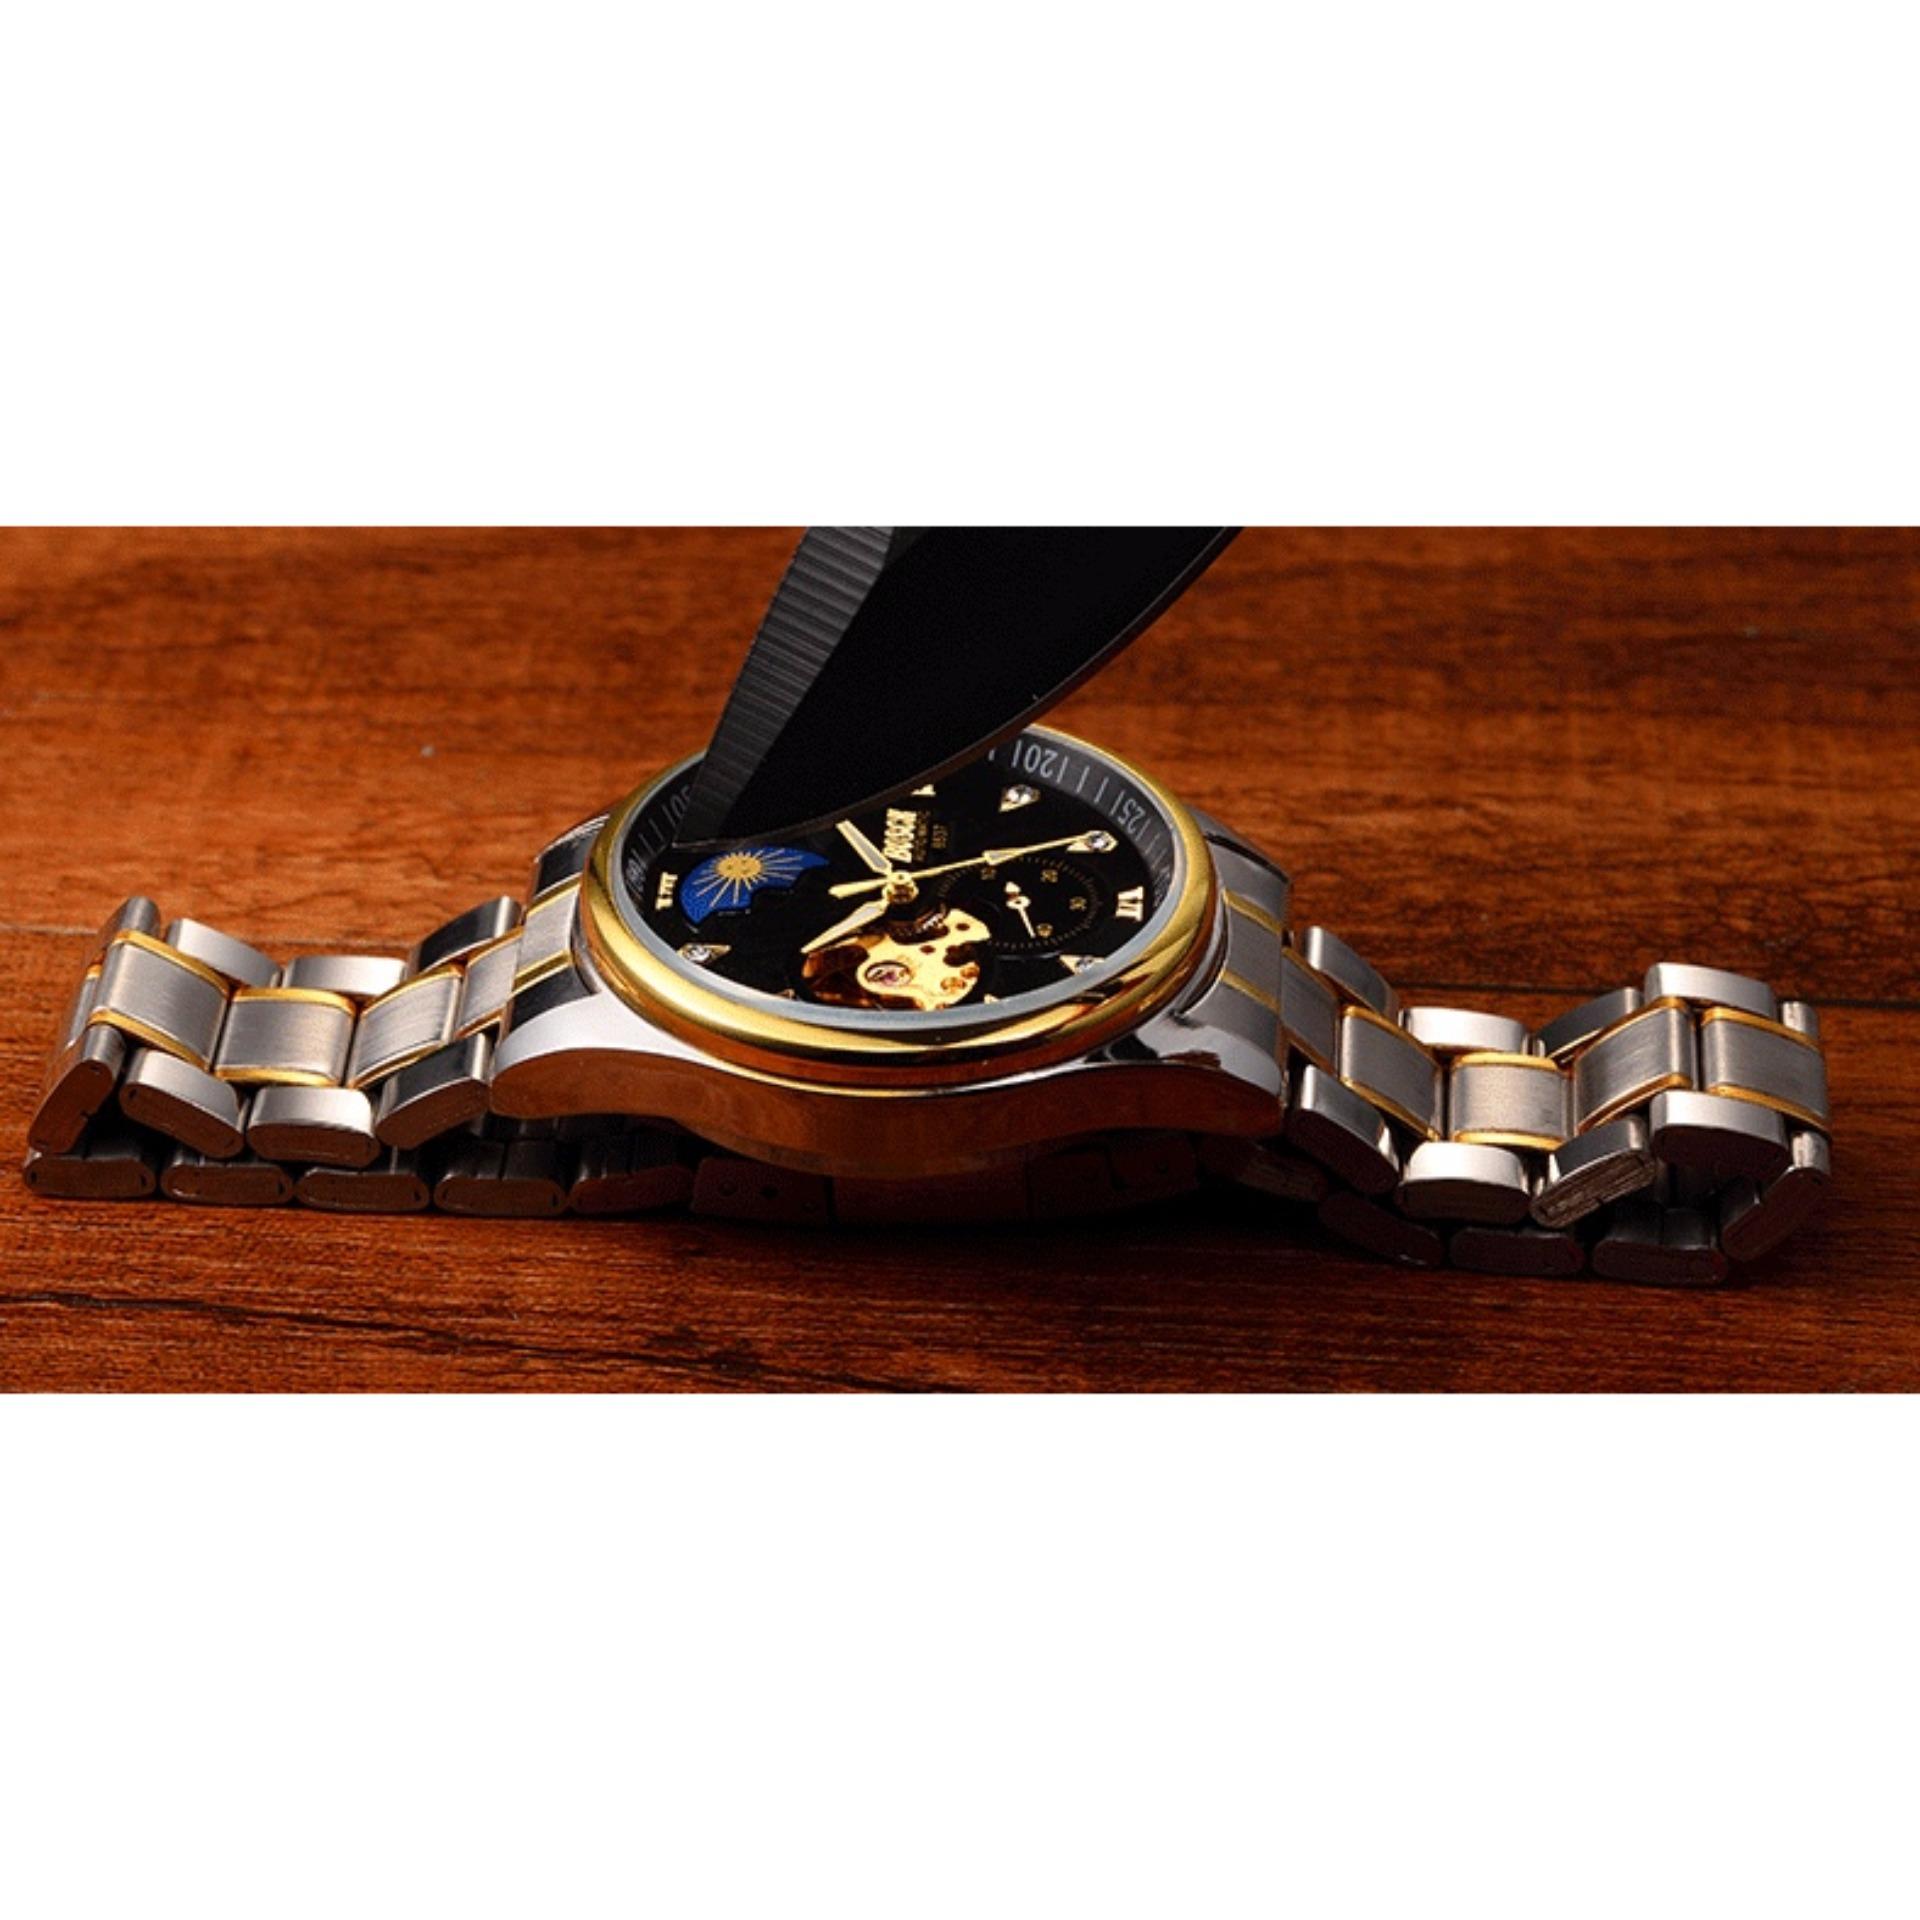 Đồng hồ cơ Automatic nam dây thép3H Fashion Bosck 6537 Golden (Dây Demi, Mặt Đen) + Tặng Kèm Hộp